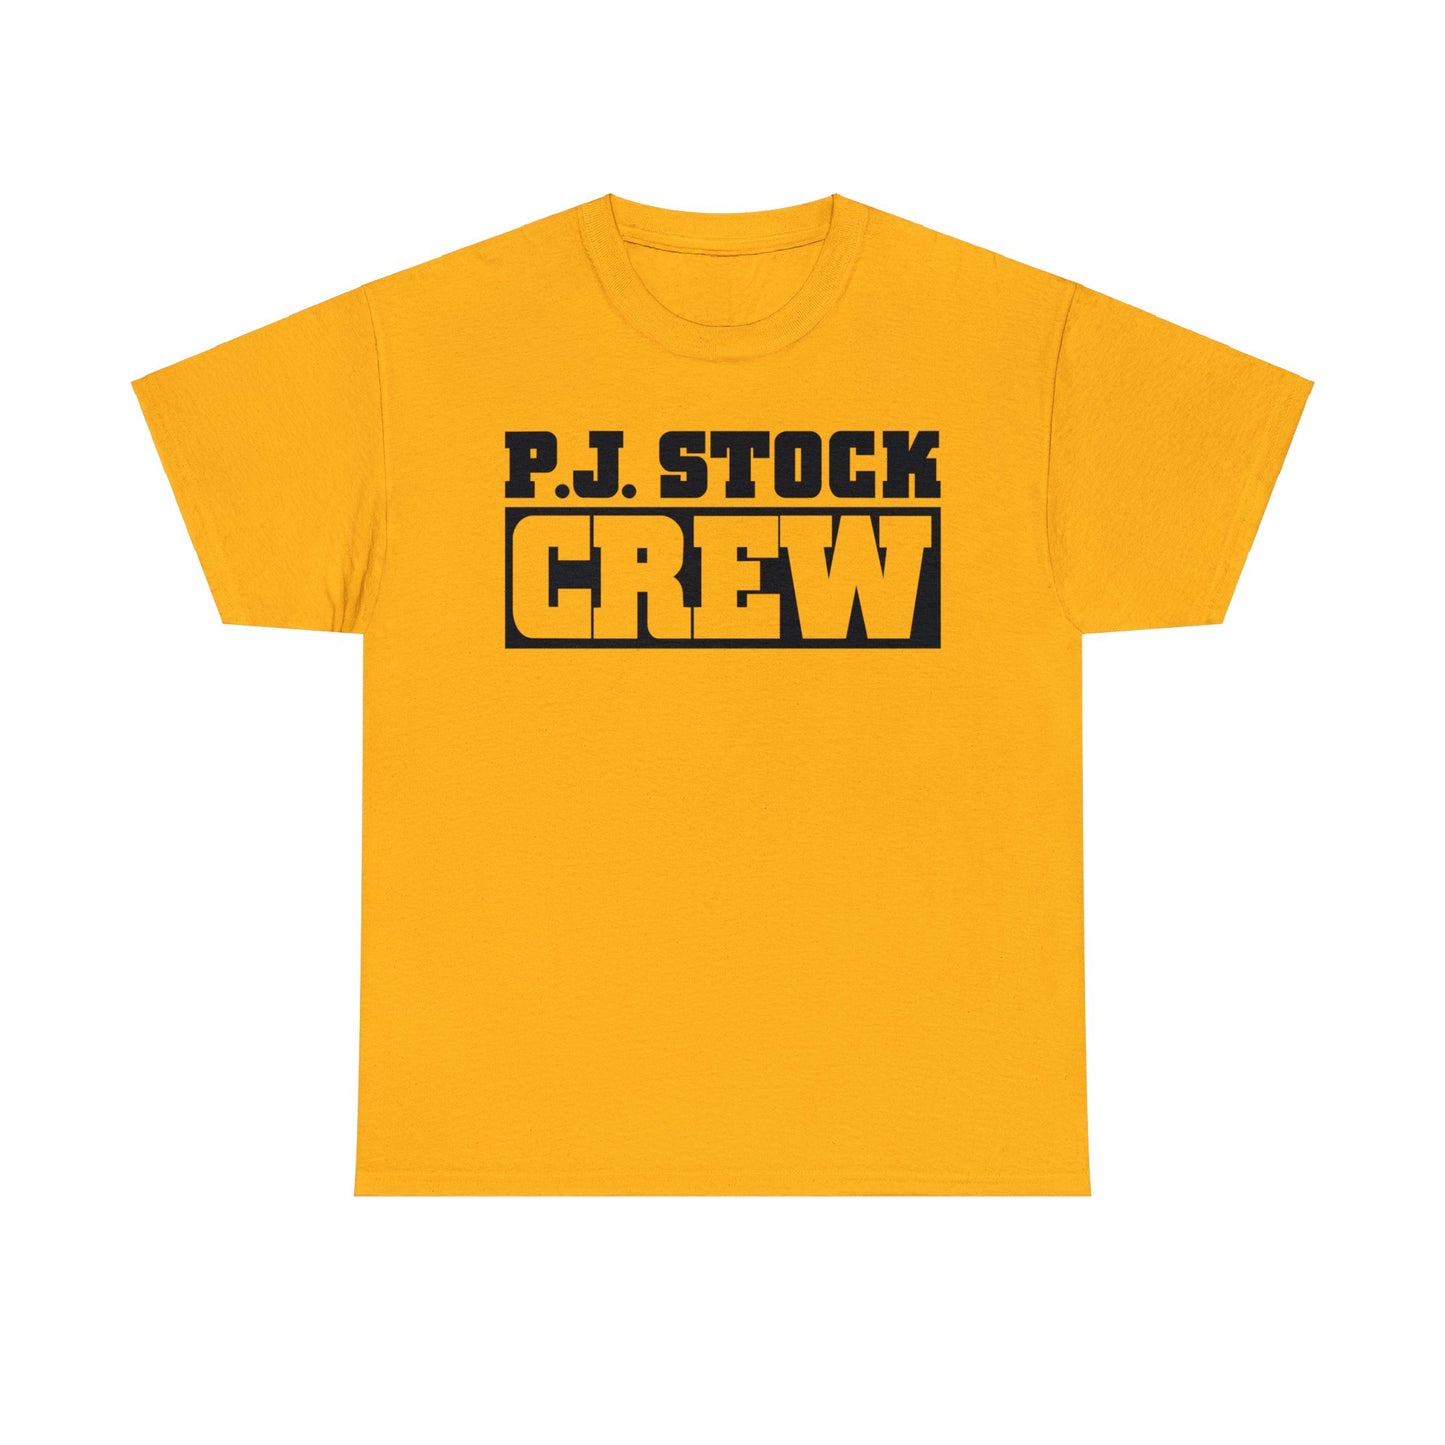 PJ Stock Crew "Asskicker" T-Shirt